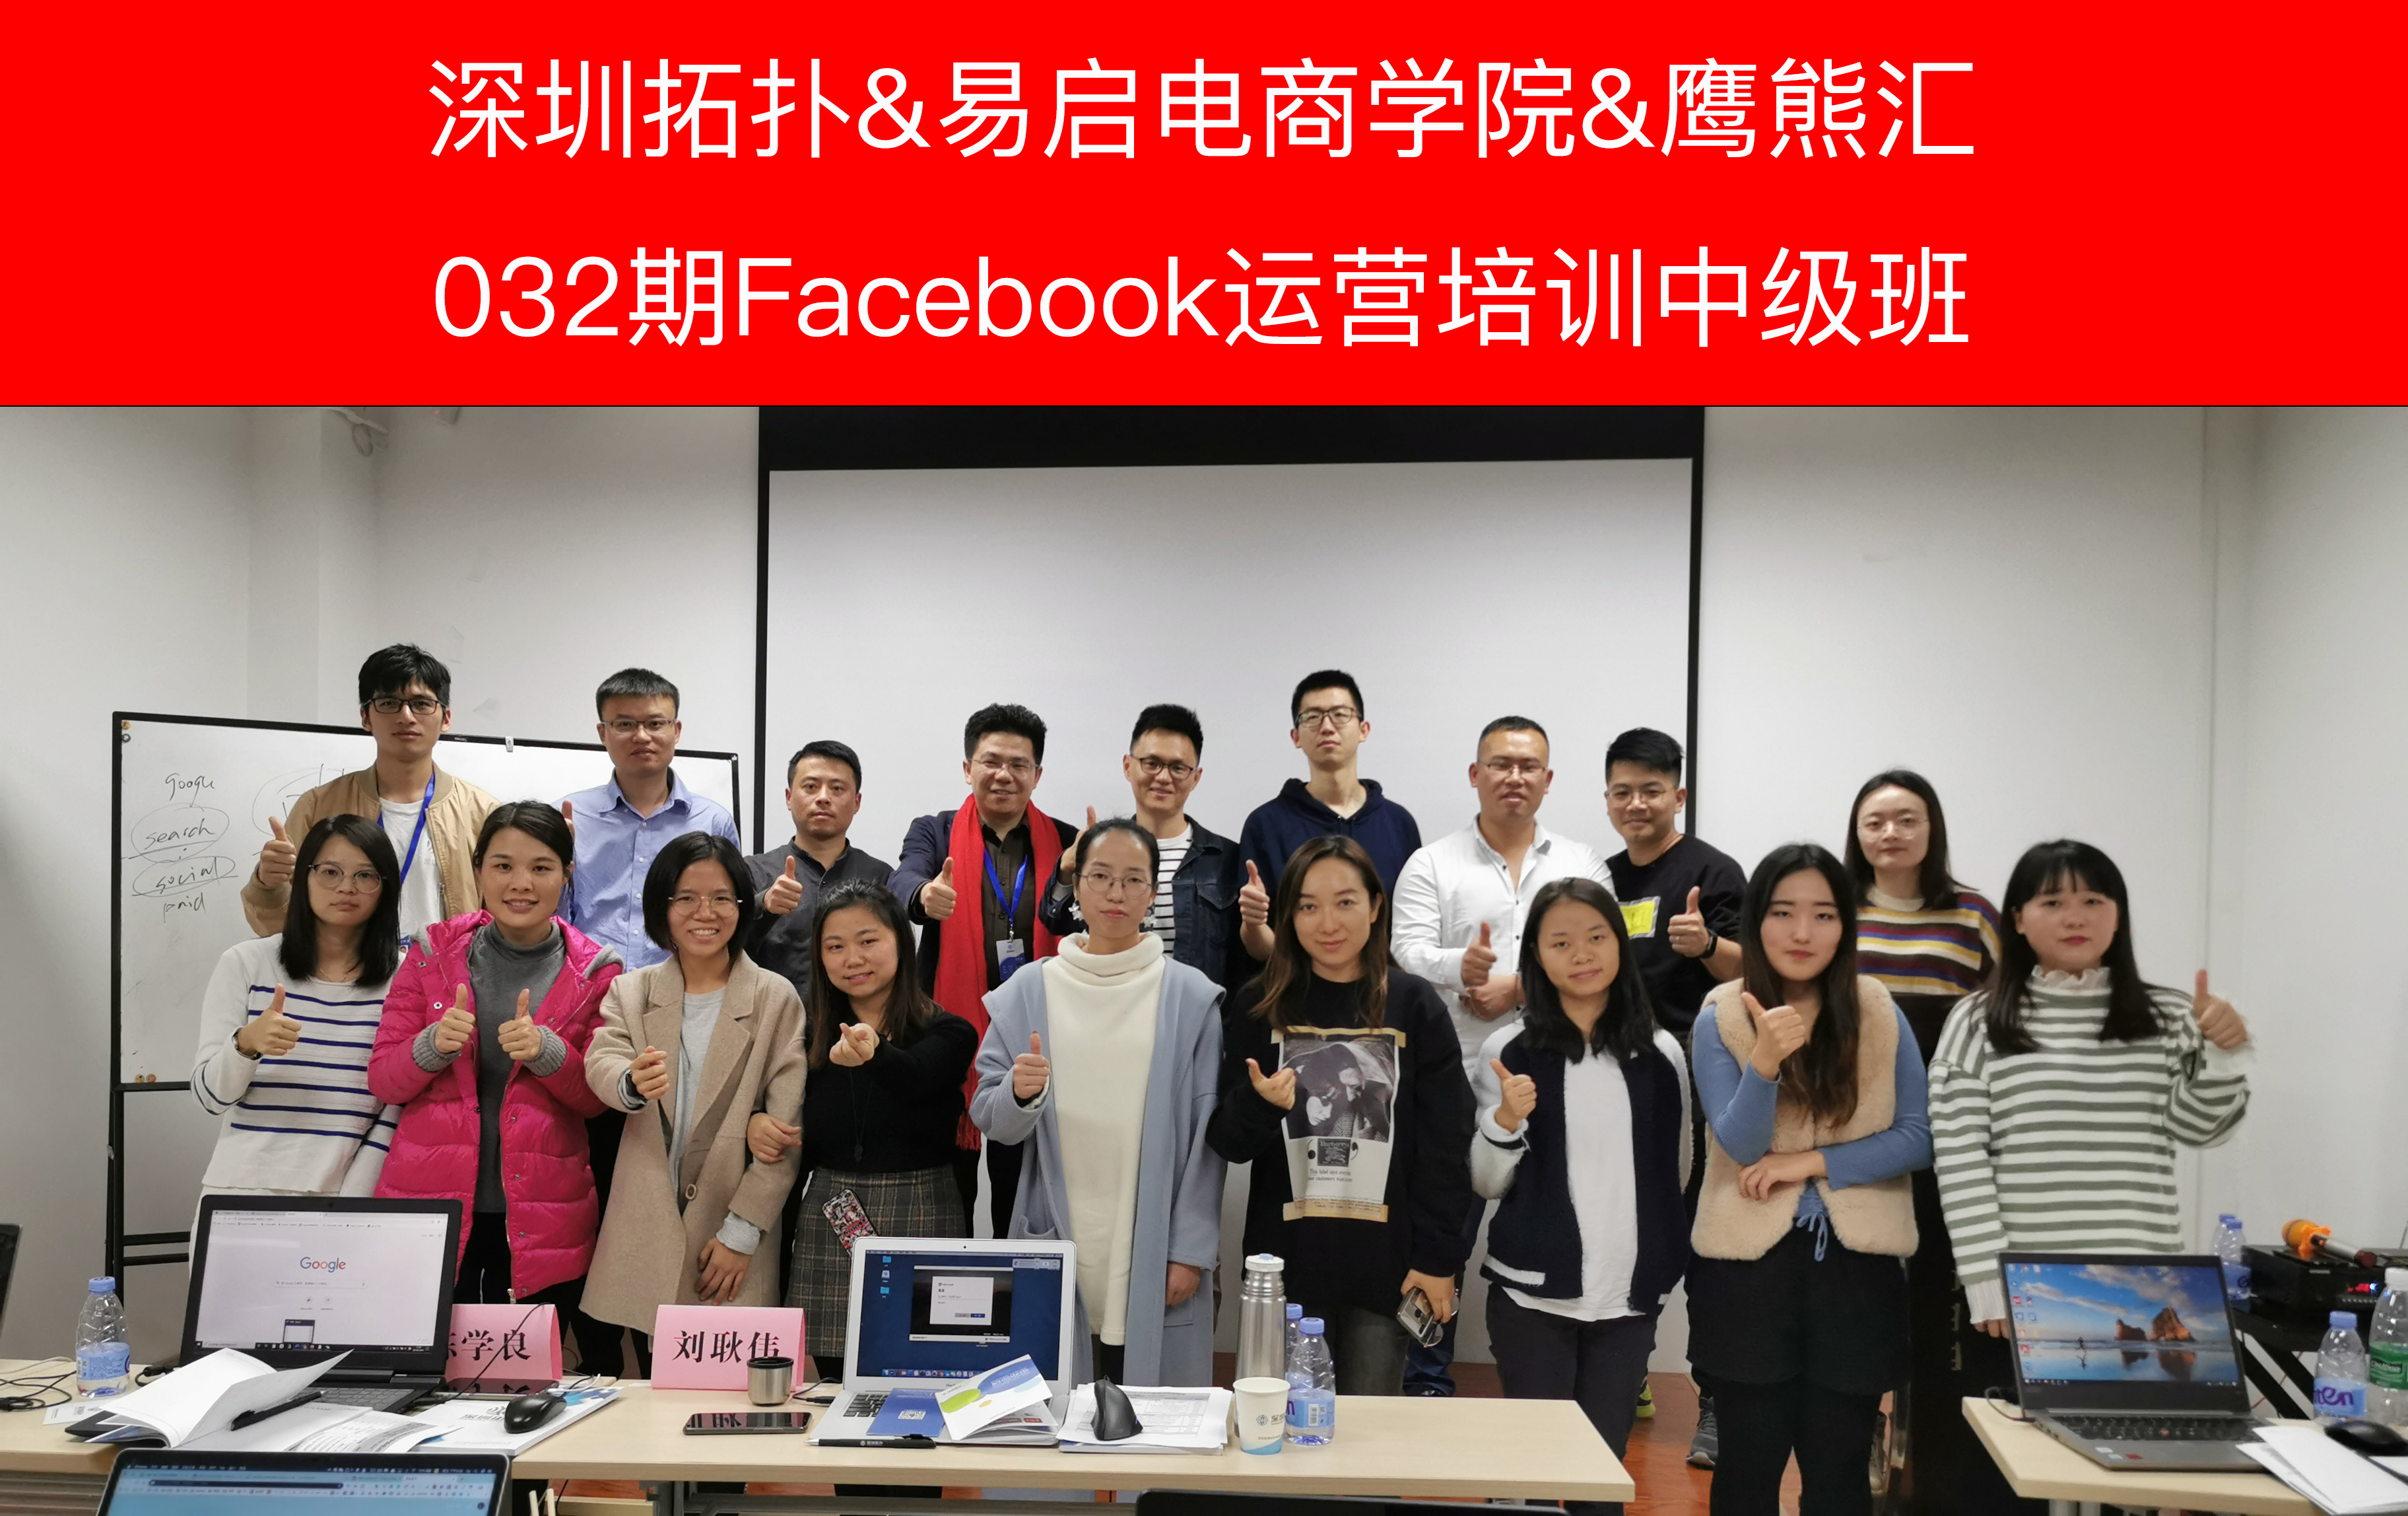 回顾 | 深圳拓扑032期Facebook运营培训中级班顺利结业！